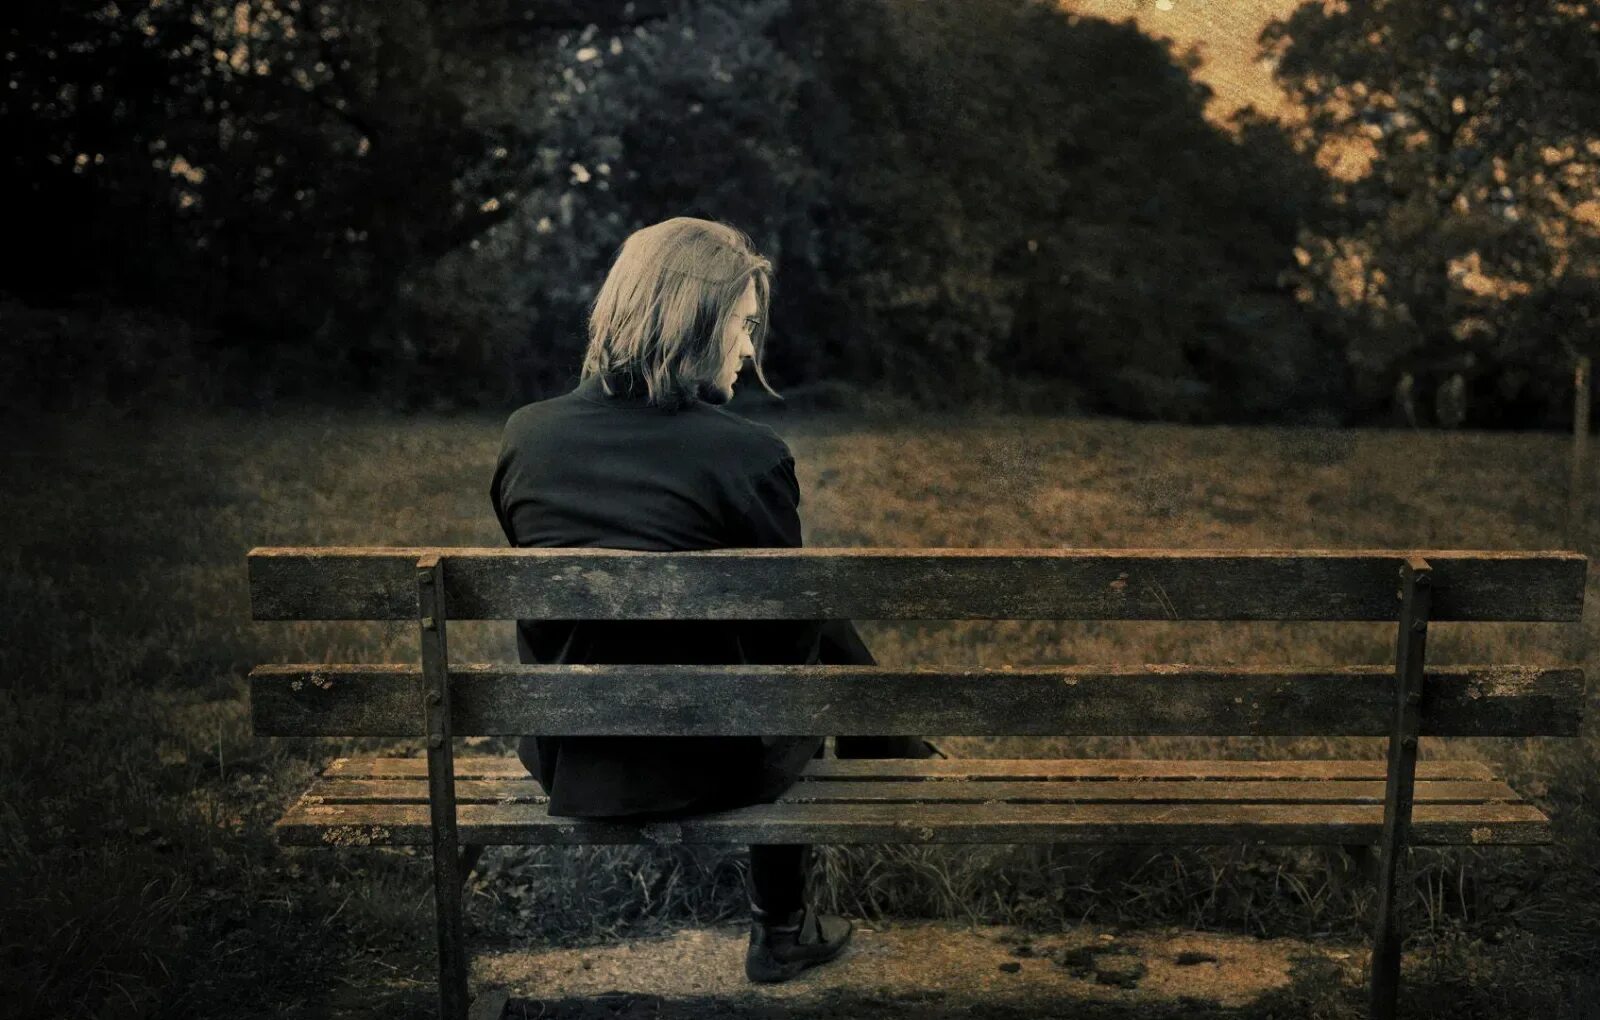 Снова одинока я сижу поет девушка. Это одиночество. Одинокая женщина на скамейке. Одинокий человек. Одинокий человек на скамейке.